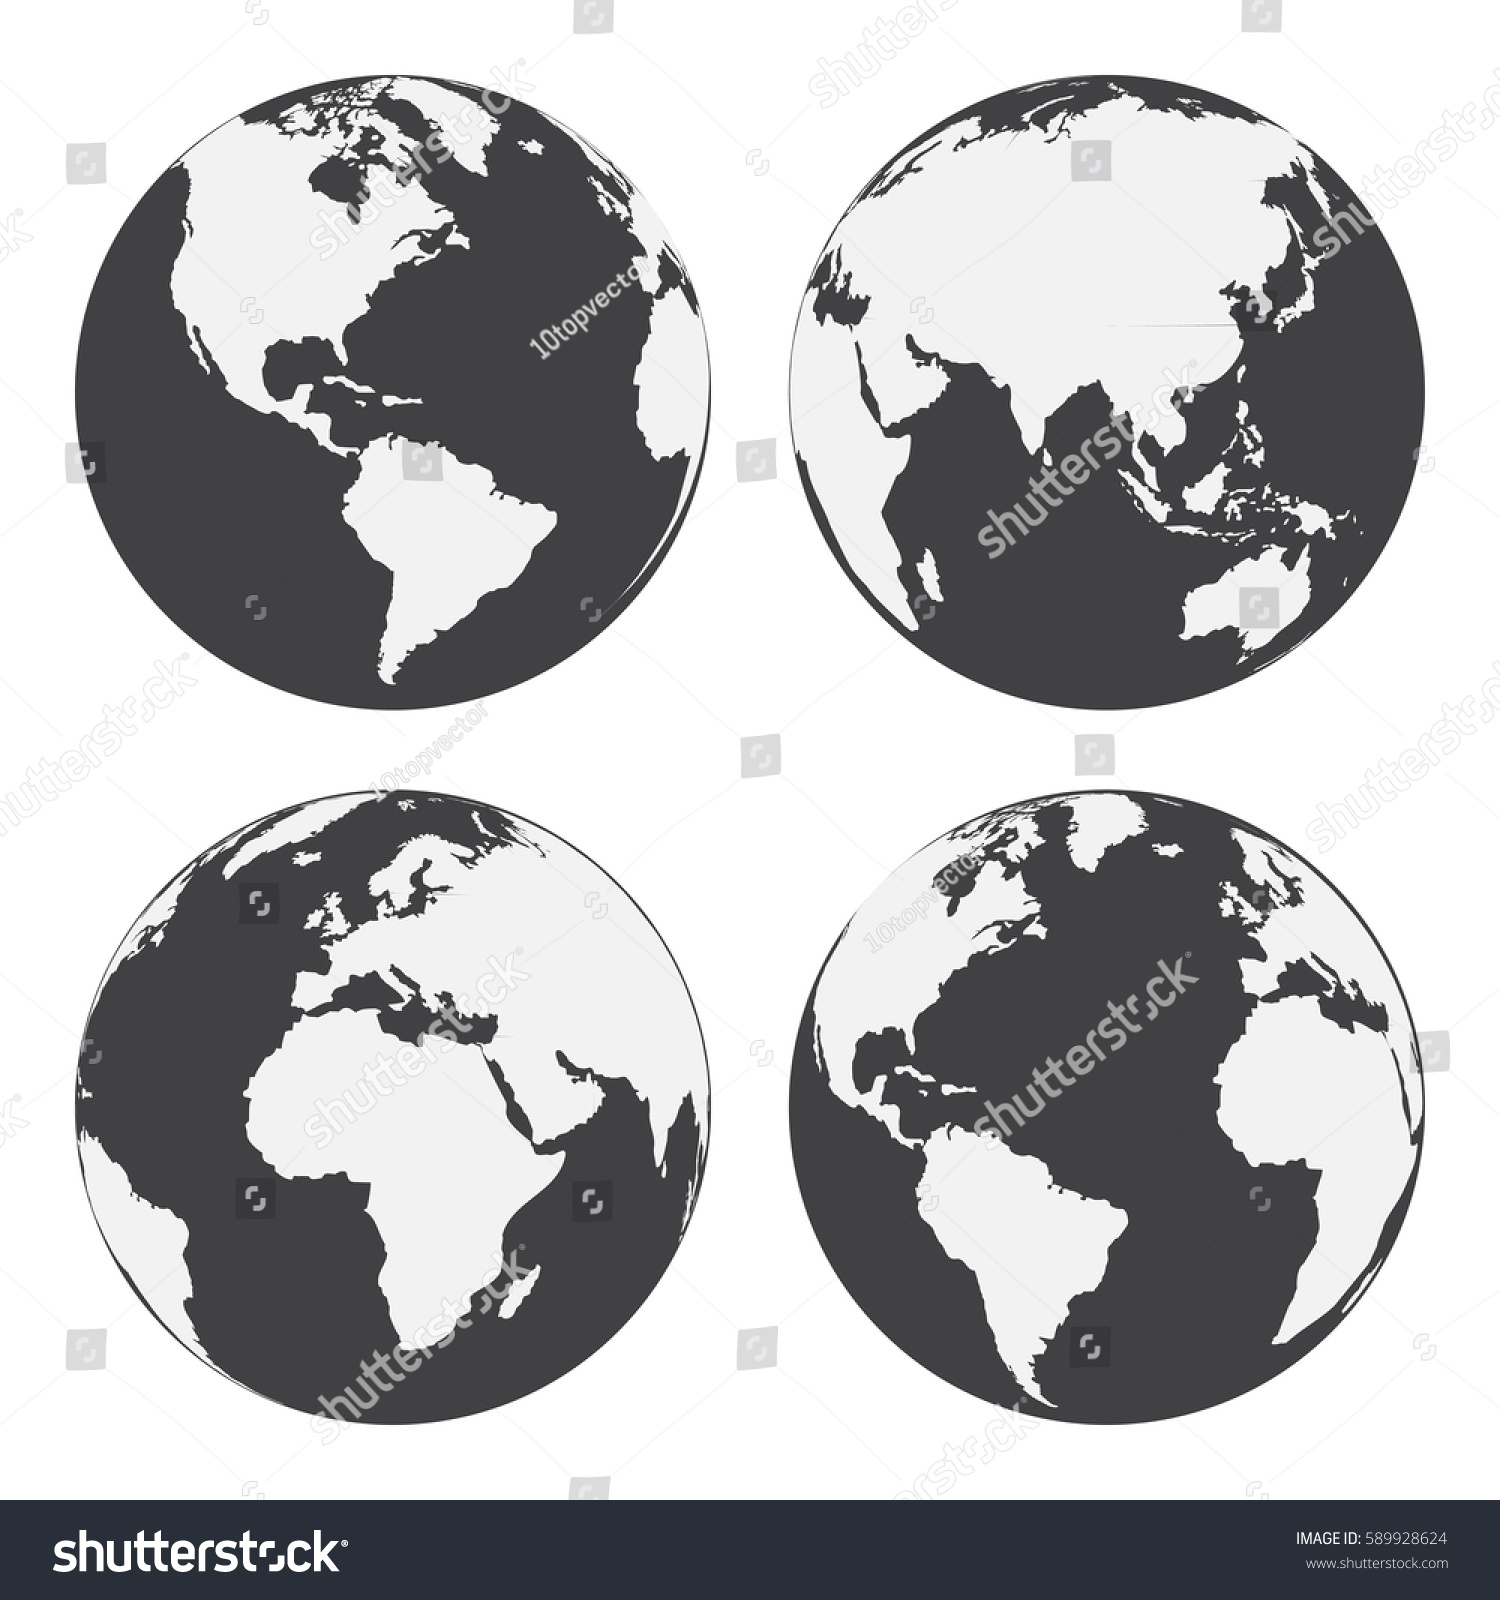 地球の地球アイコンのセット フラットスタイル ベクターイラスト のベクター画像素材 ロイヤリティフリー